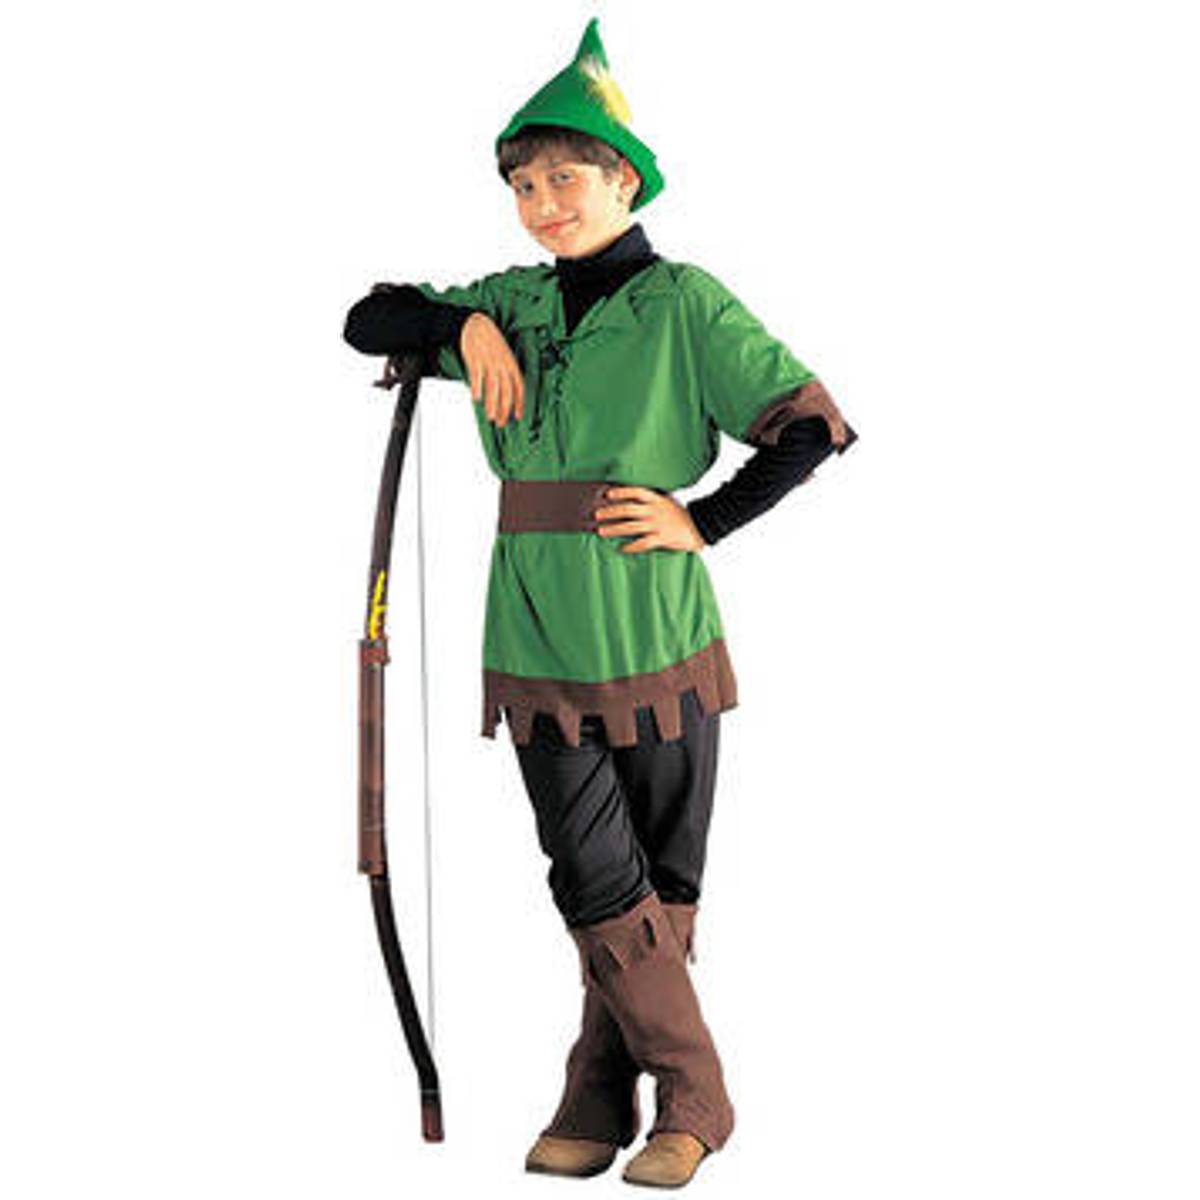 Robin hood kostume børn • Find billigste pris hos PriceRunner nu »